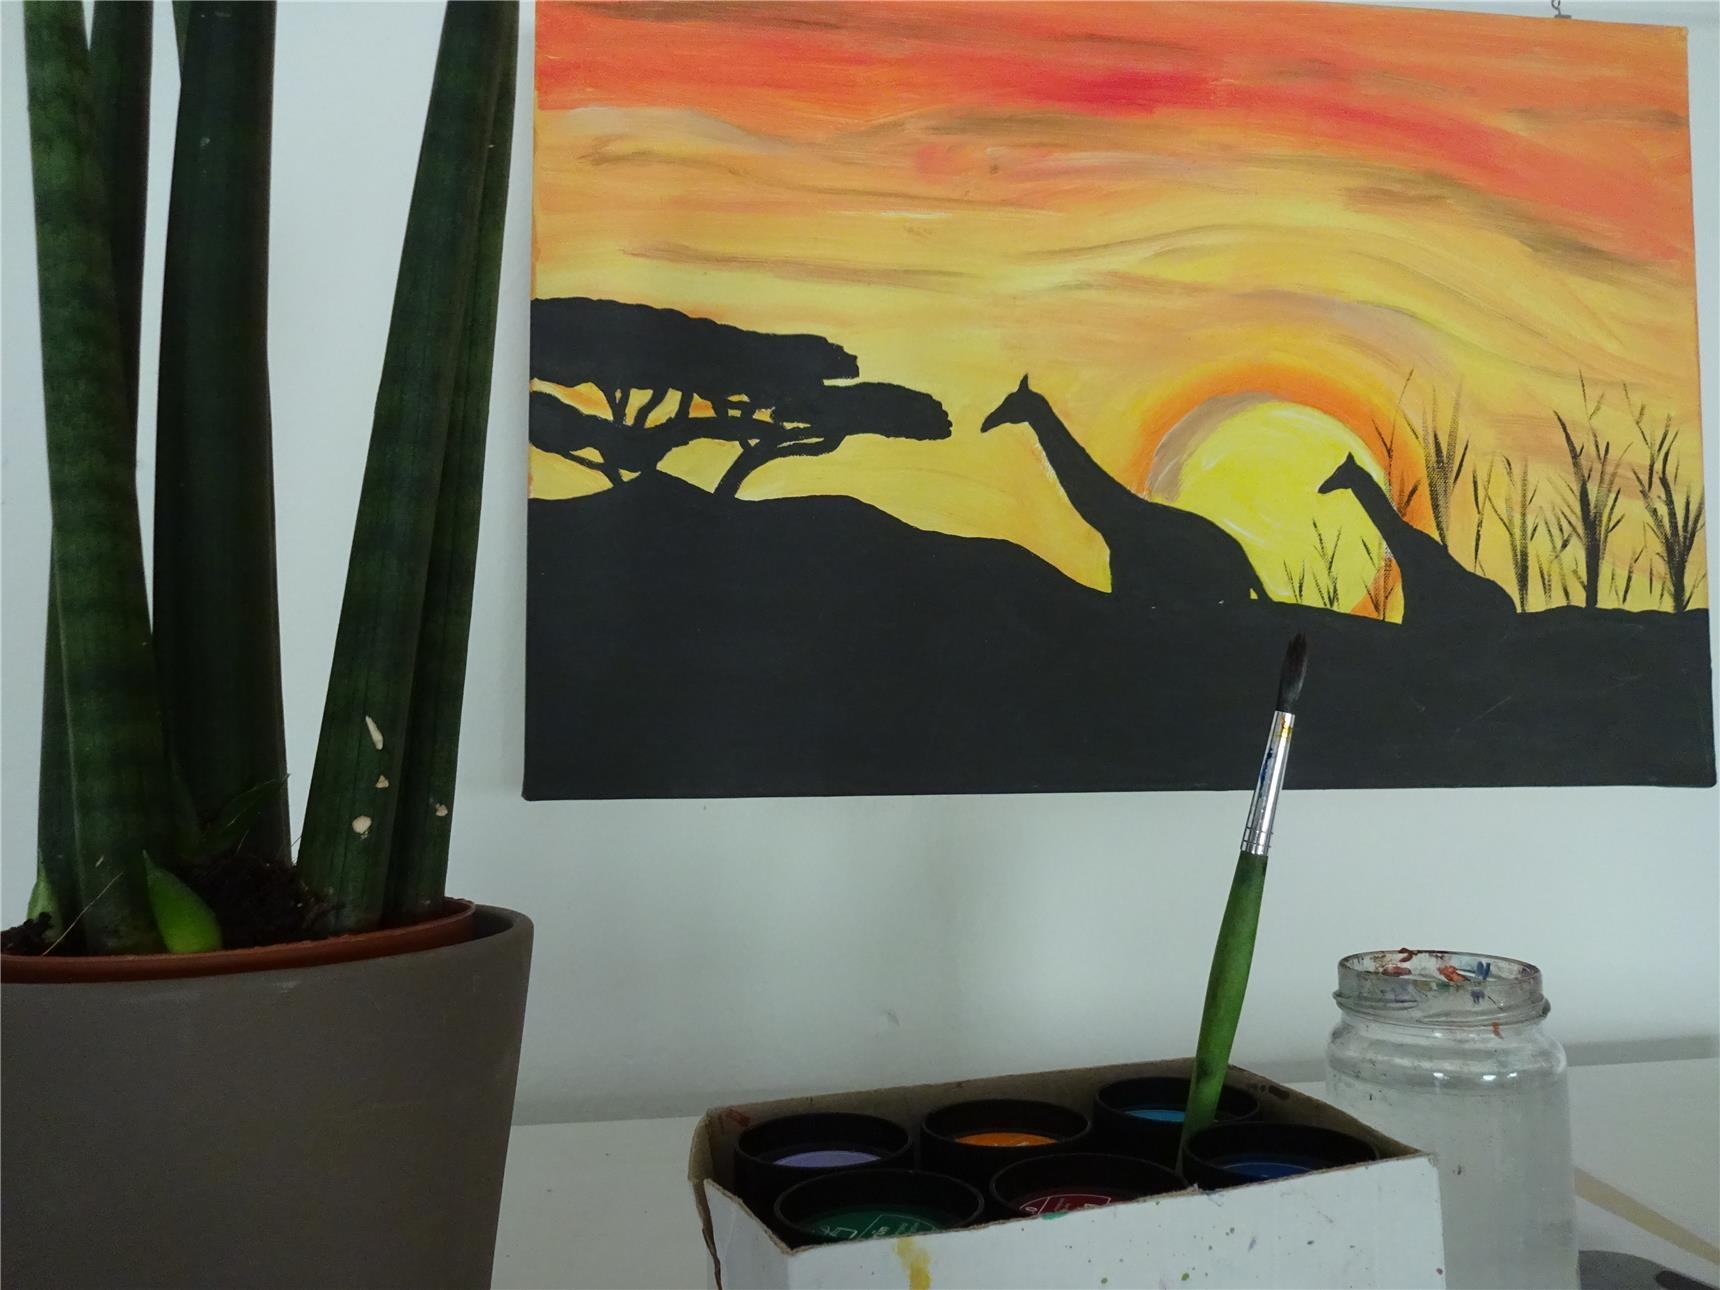 An einer Wand hängt ein Bild mit Silhouetten von Giraffen vor einem Sonnenuntergang; davor: Farben, ein Pinsel und ein Wasserglas. (Tagesstätte St. Maximin/Caritasverband Trier e. V.)